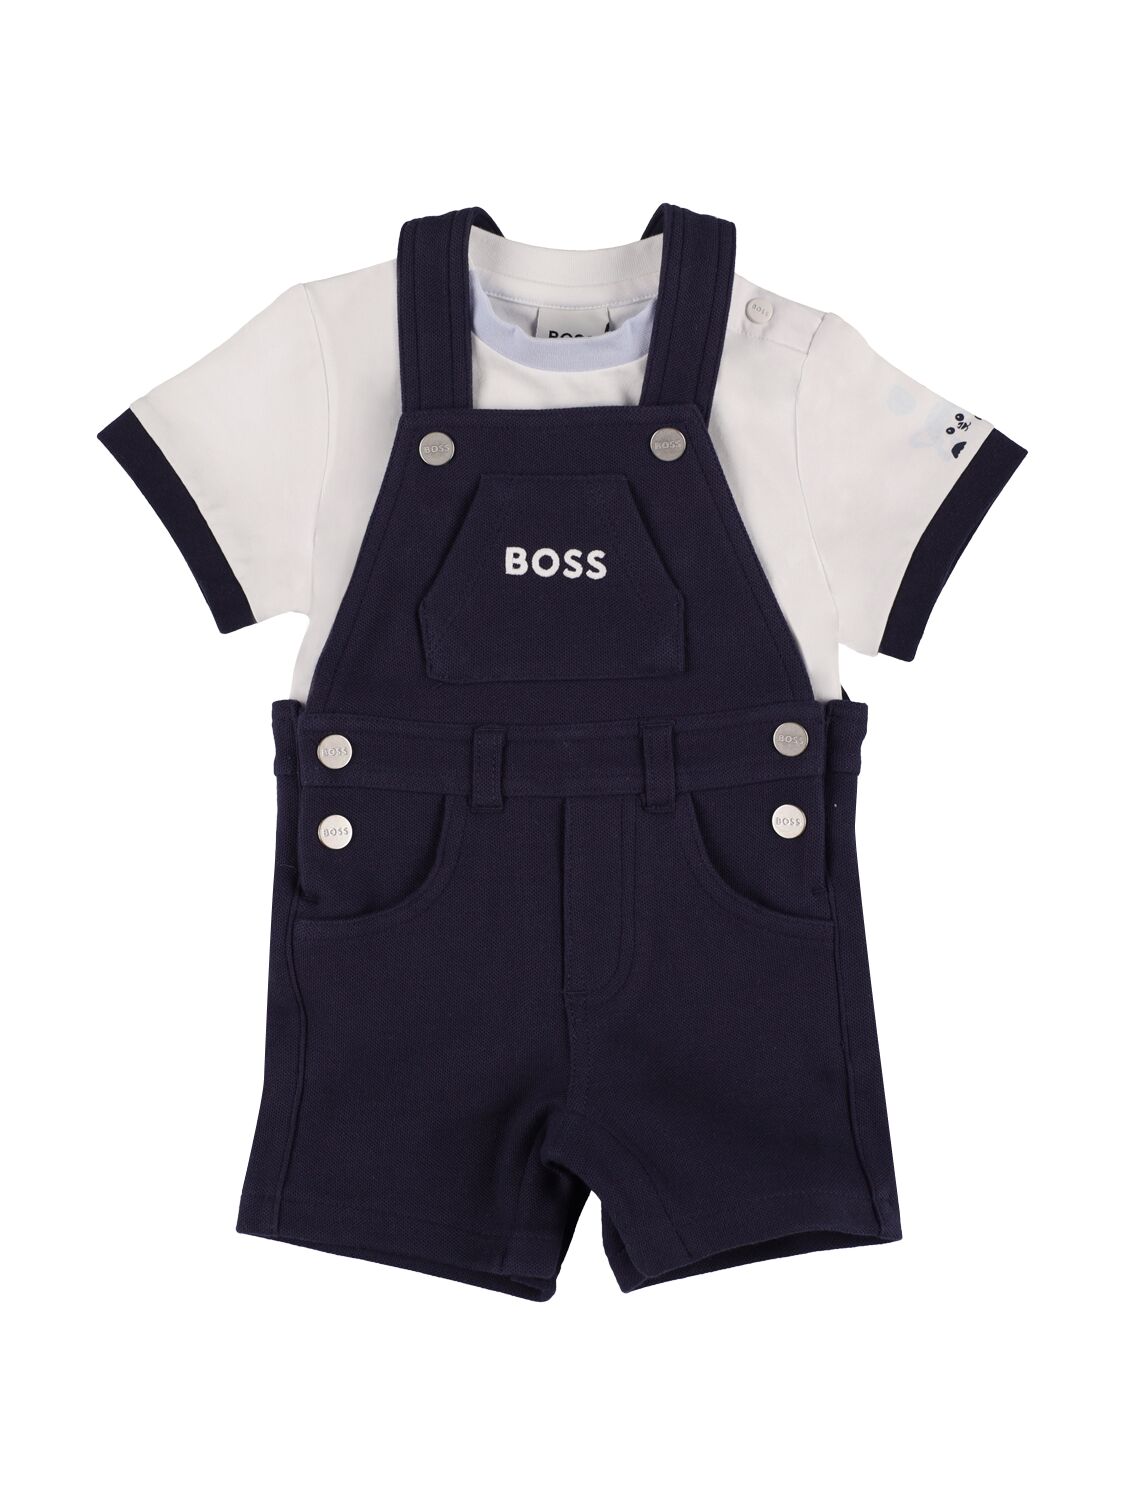 Hugo Boss Babies' 棉质平纹针织t恤&背带裤 In Navy,white